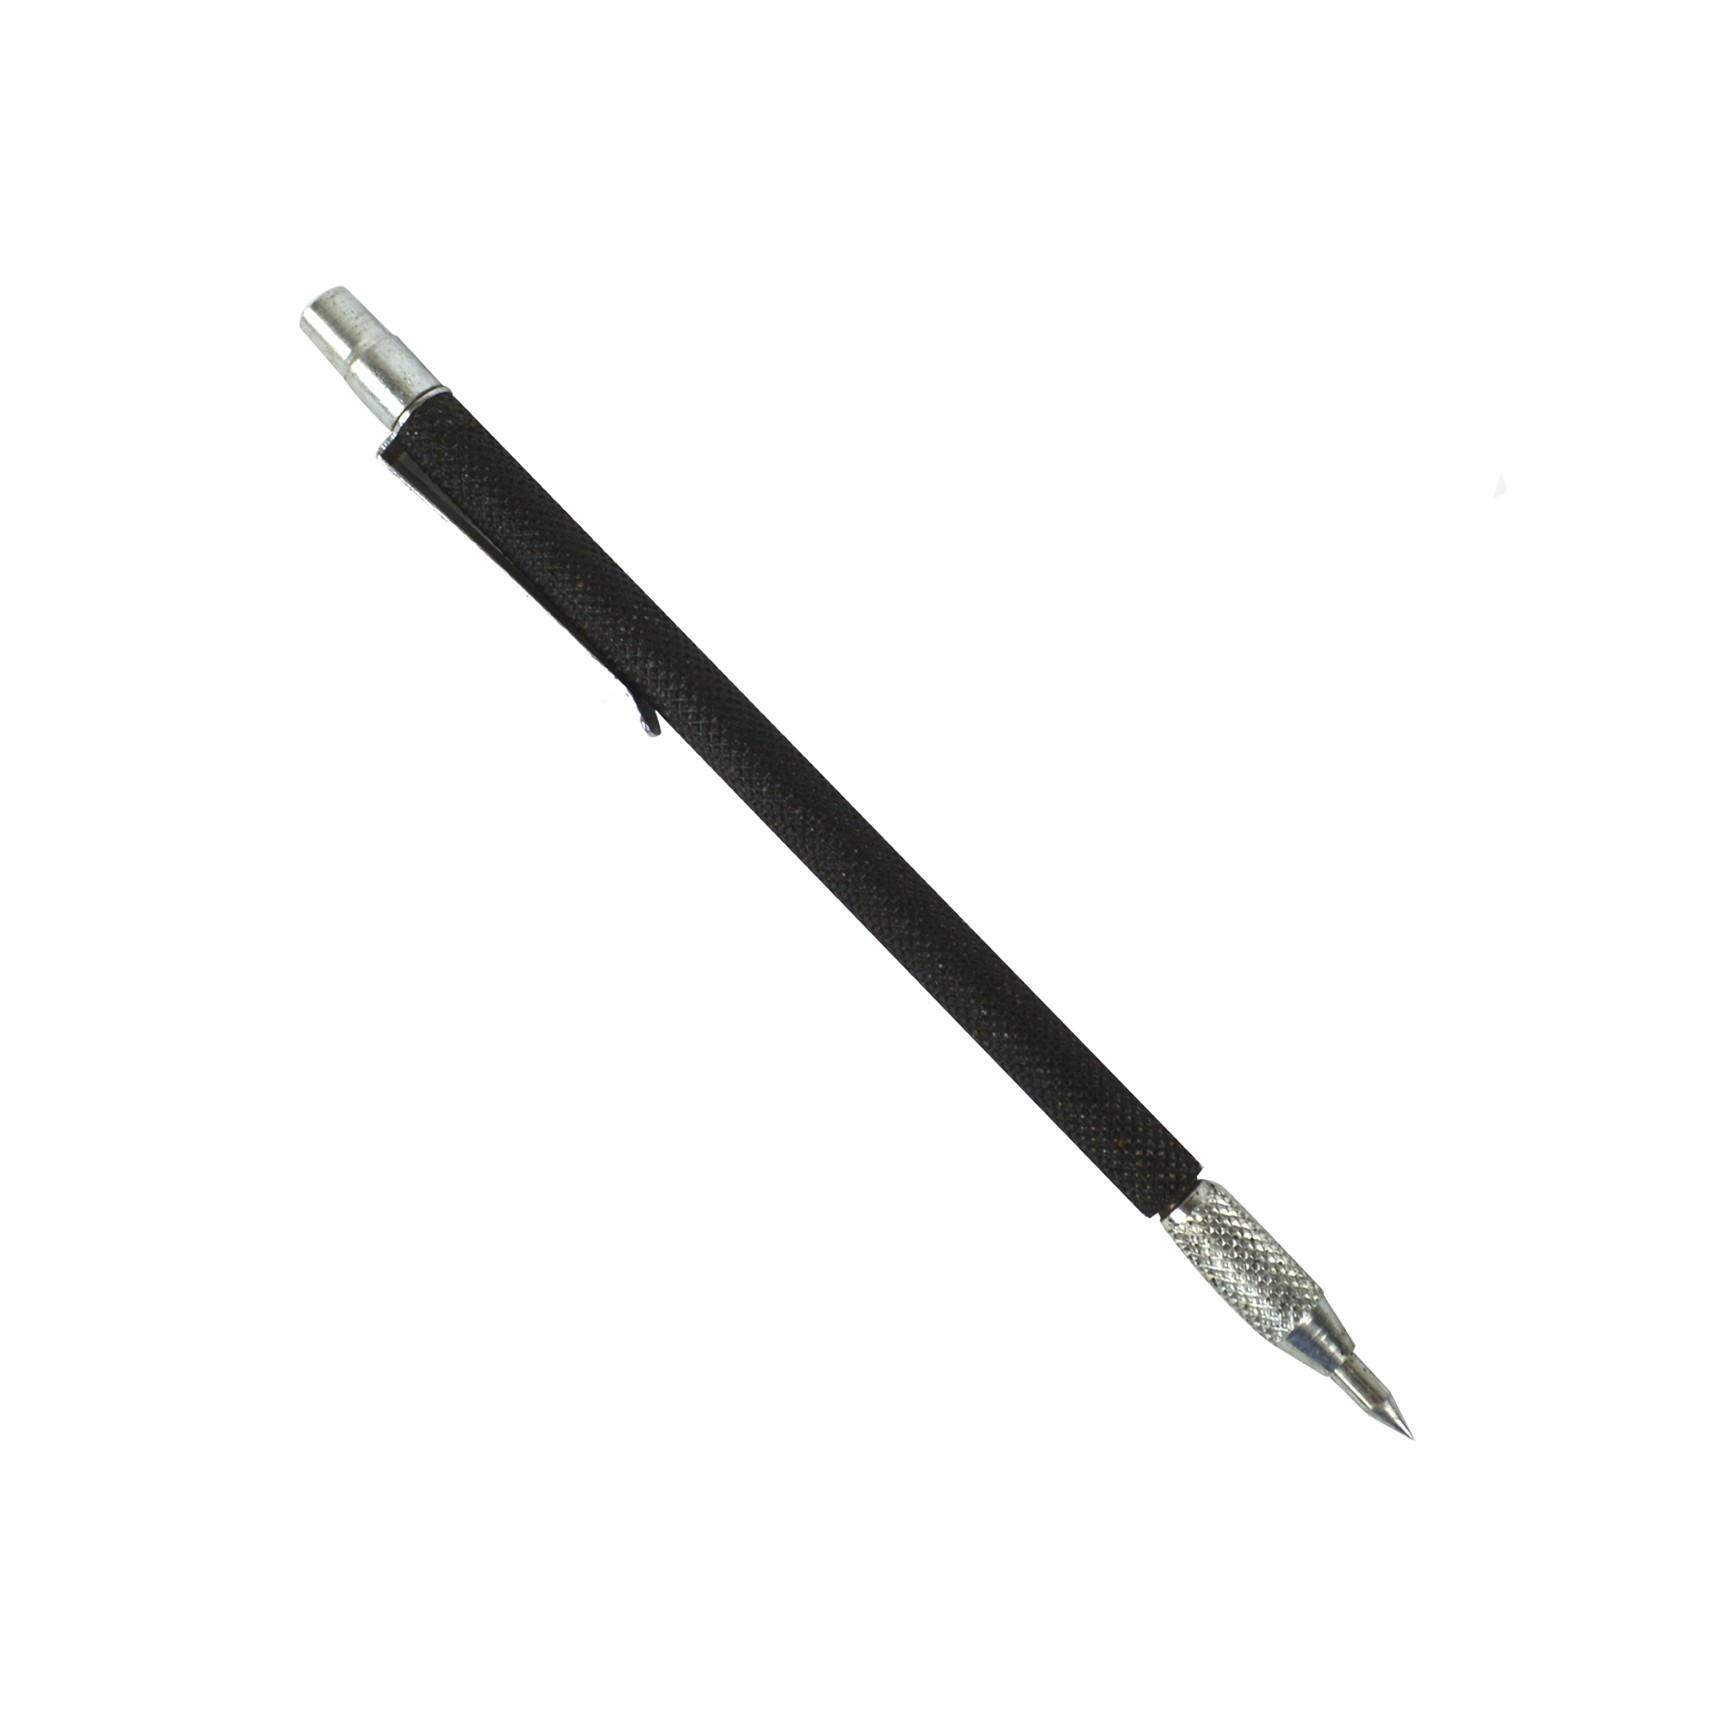 6" Carbide Scriber Pen Type 